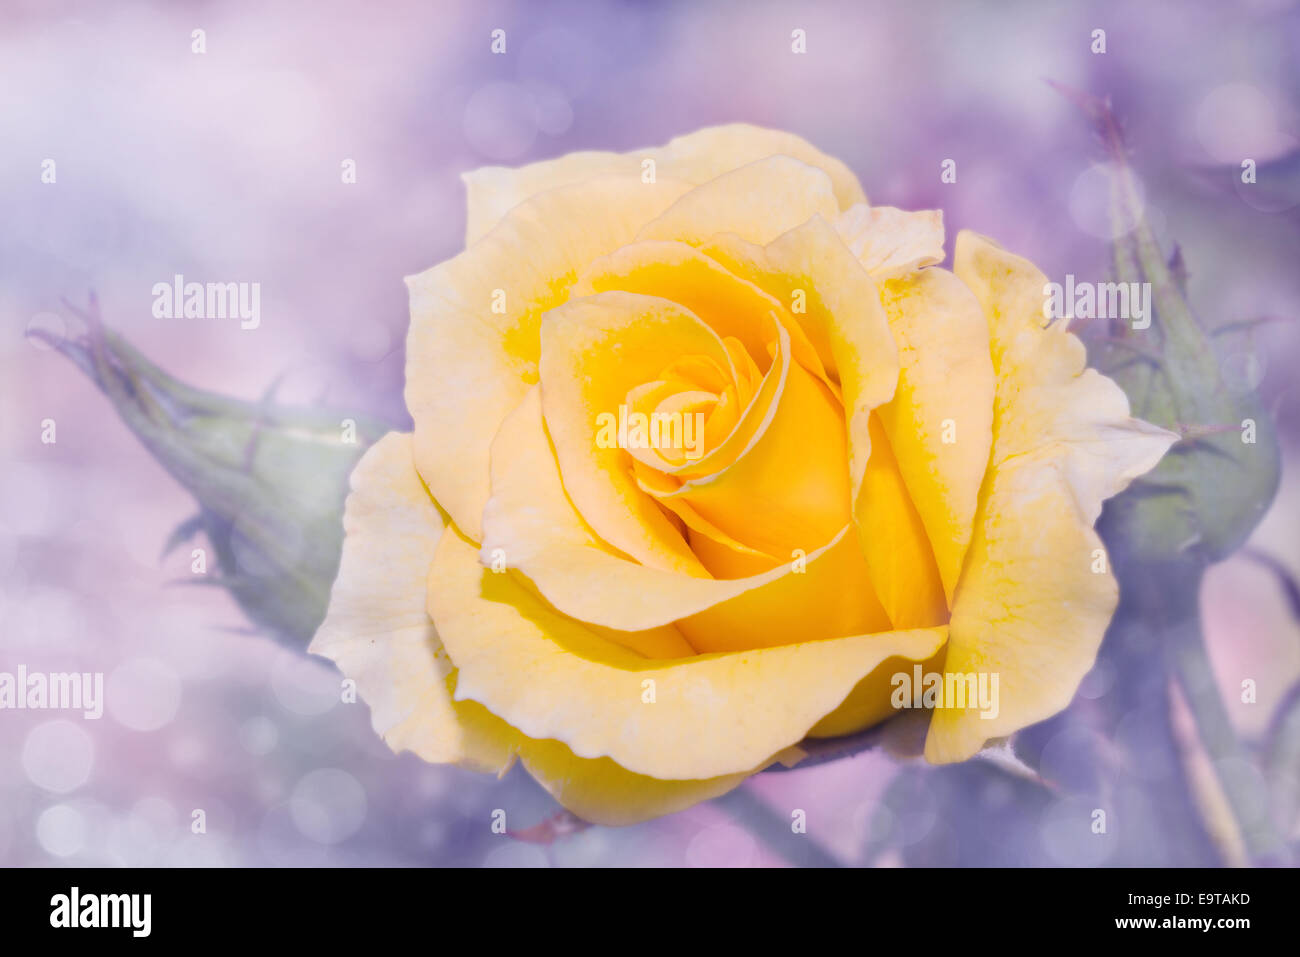 L'image de rêve d'une rose jaune avec de délicats fond violet Banque D'Images